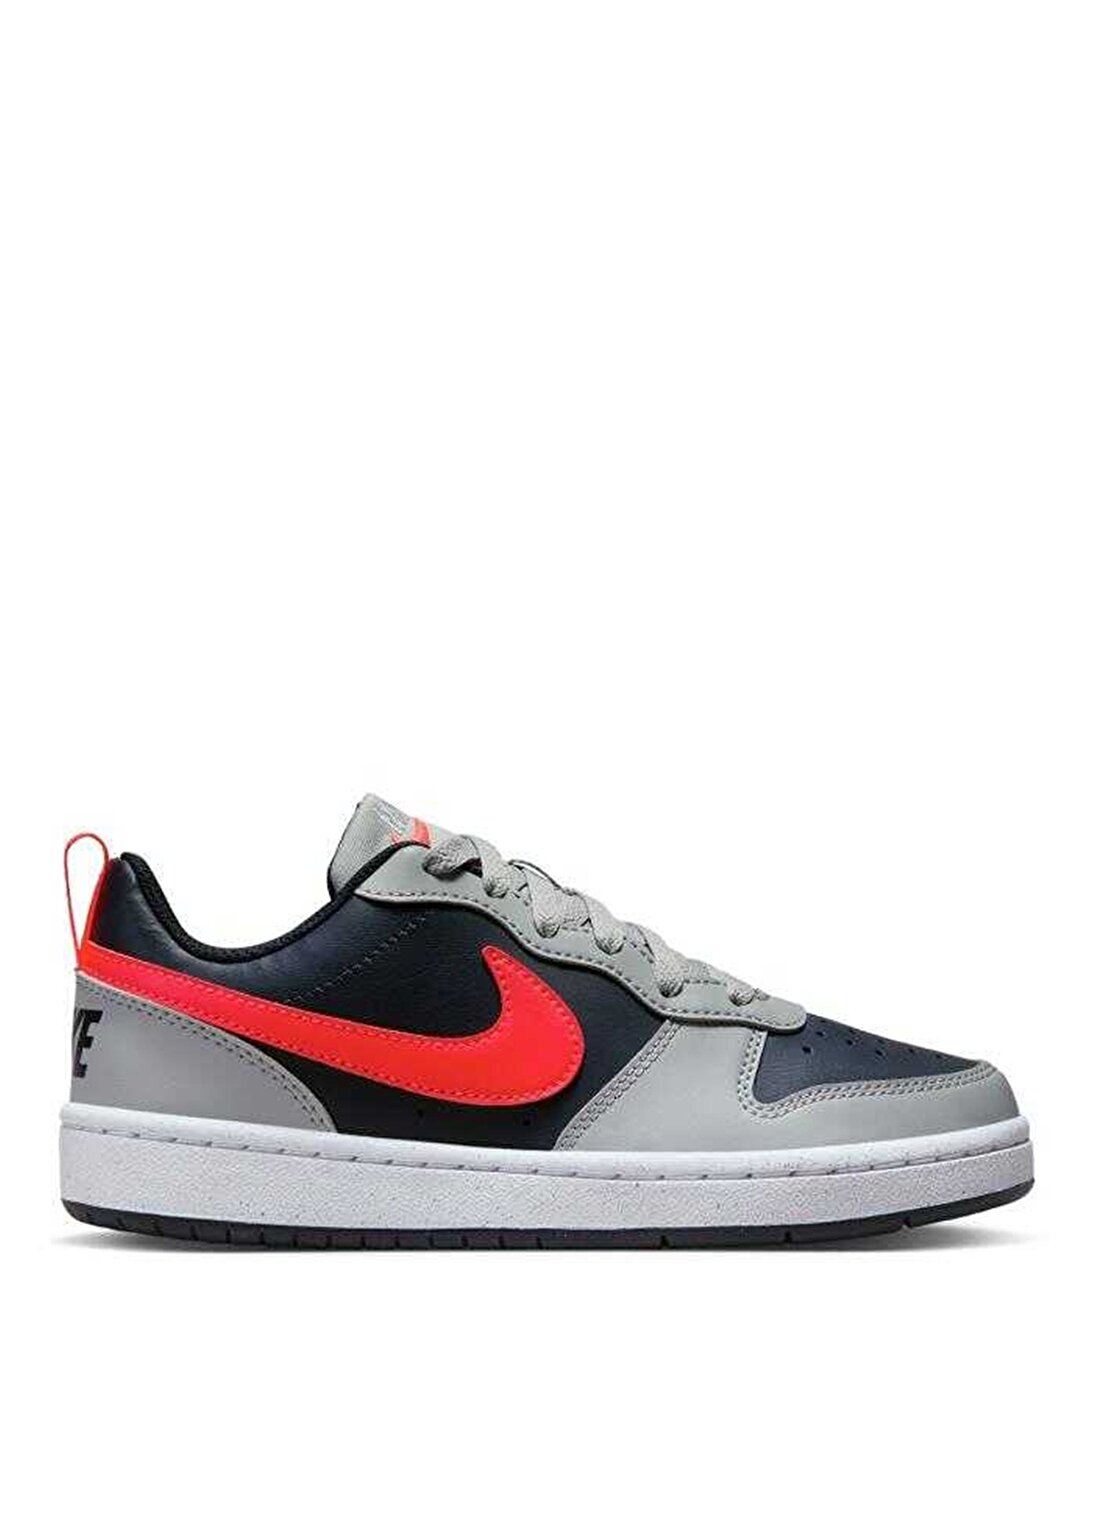 Nike Gri - Kırmızı - Siyah Erkek Çocuk Yürüyüş Ayakkabısı